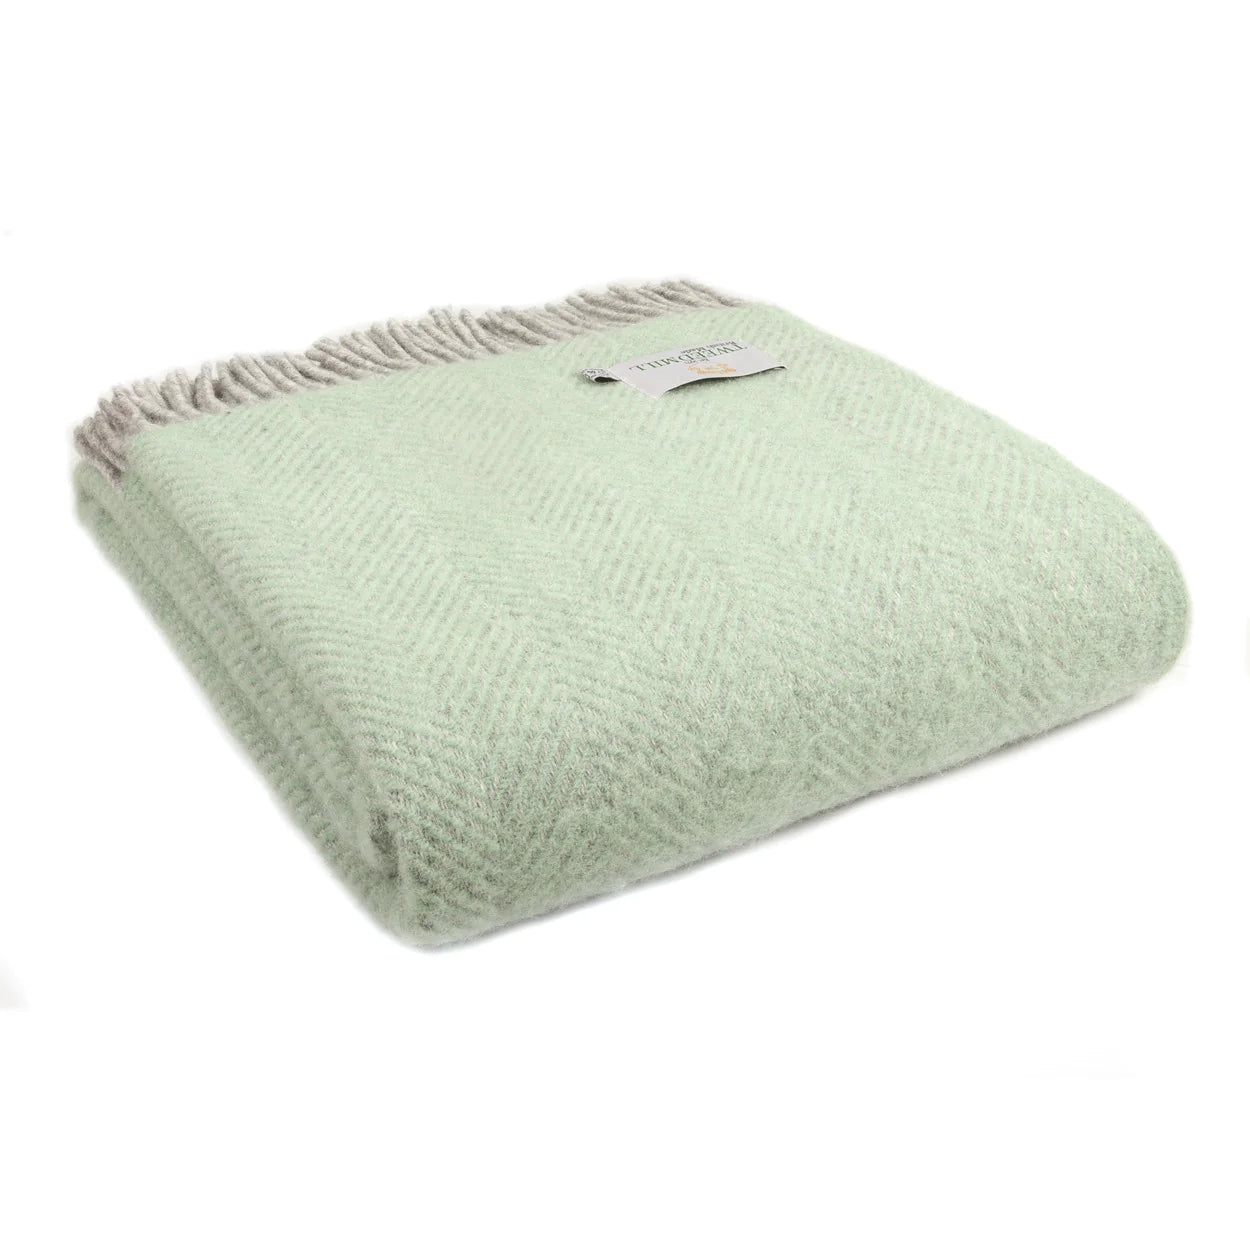 Wool Blanket - Herringbone